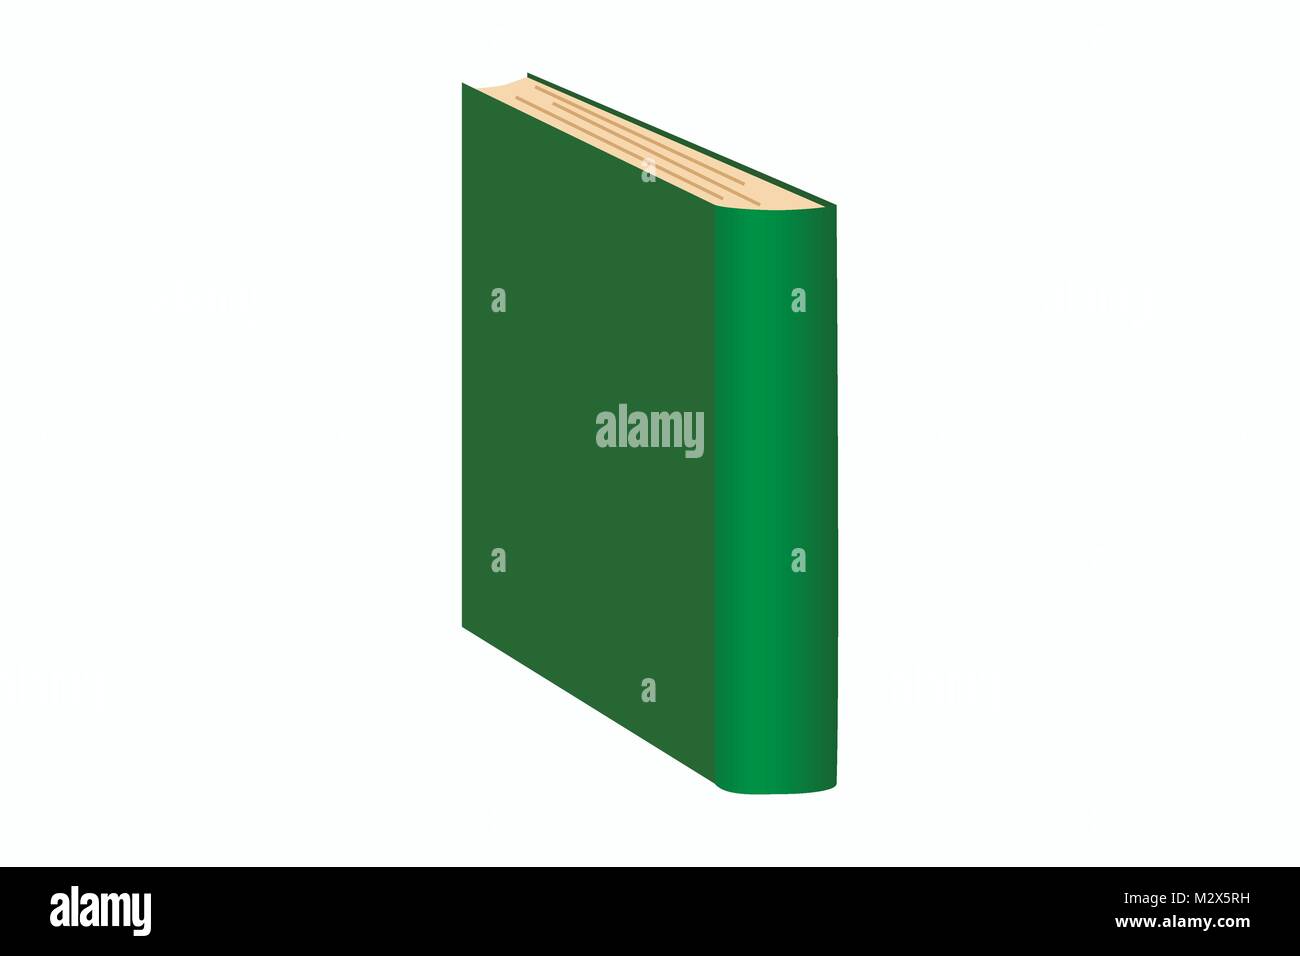 Abbildung der ständigen Grünes Buch, Vektor der gebundene Buch/altes Buch, Symbol für Referenzen, Bibliothek, Literatur das Symbol Symbol, Veröffentlichung Symbol Stock Vektor